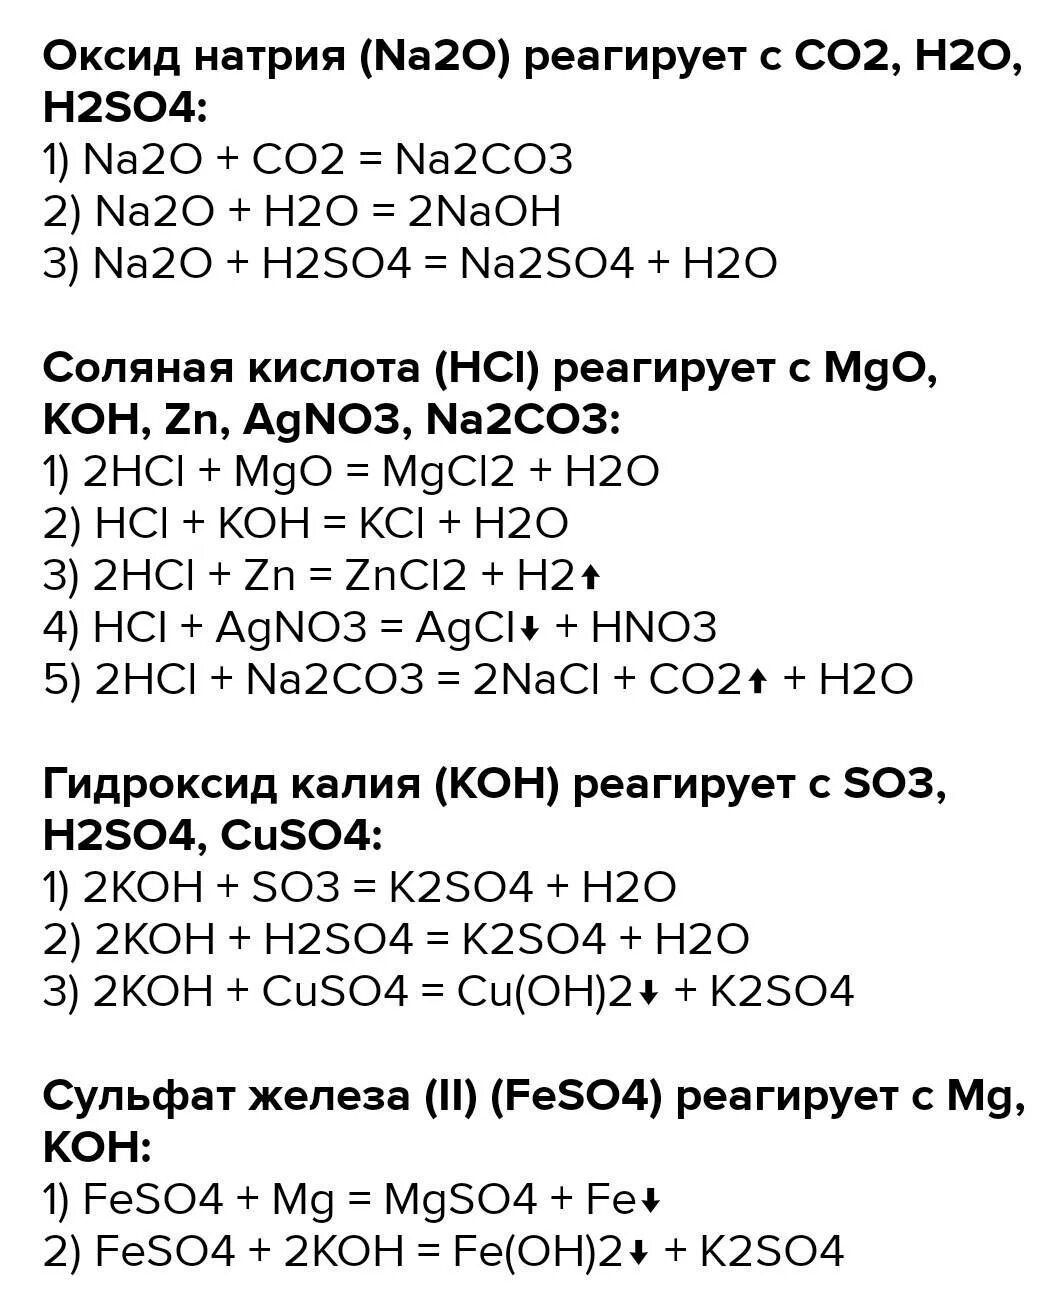 Реакция h2s+na. K+h2so4 уравнение химической реакции. Na2co3 реакция. Koh уравнение реакции. Na2co3 h20